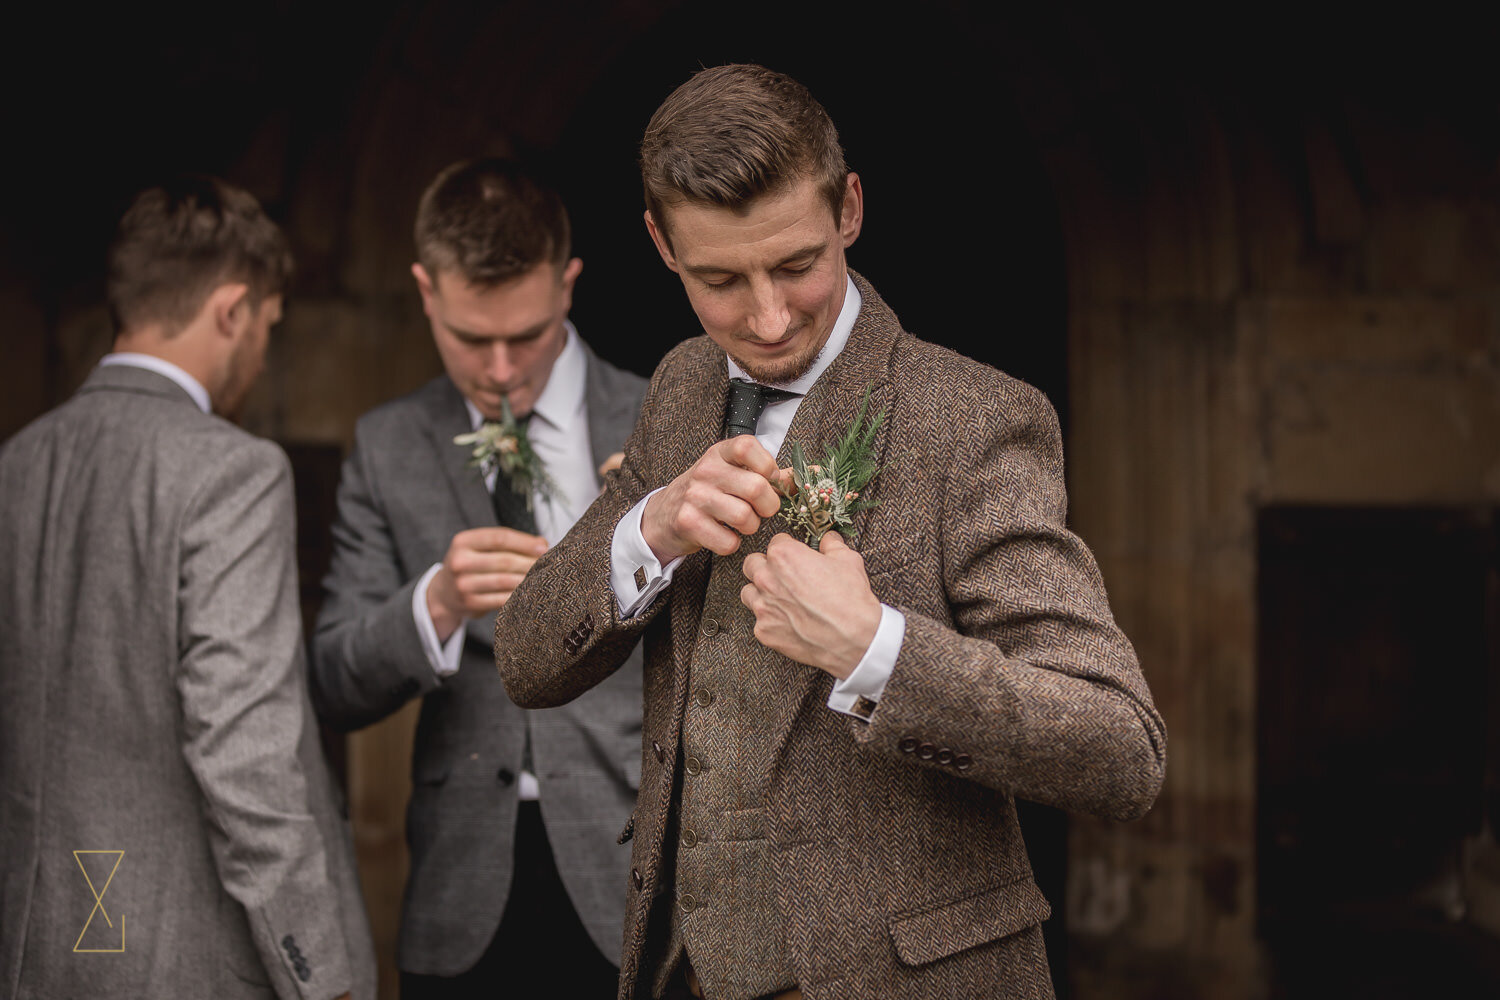 Groomsmen-pinning-buttonholes